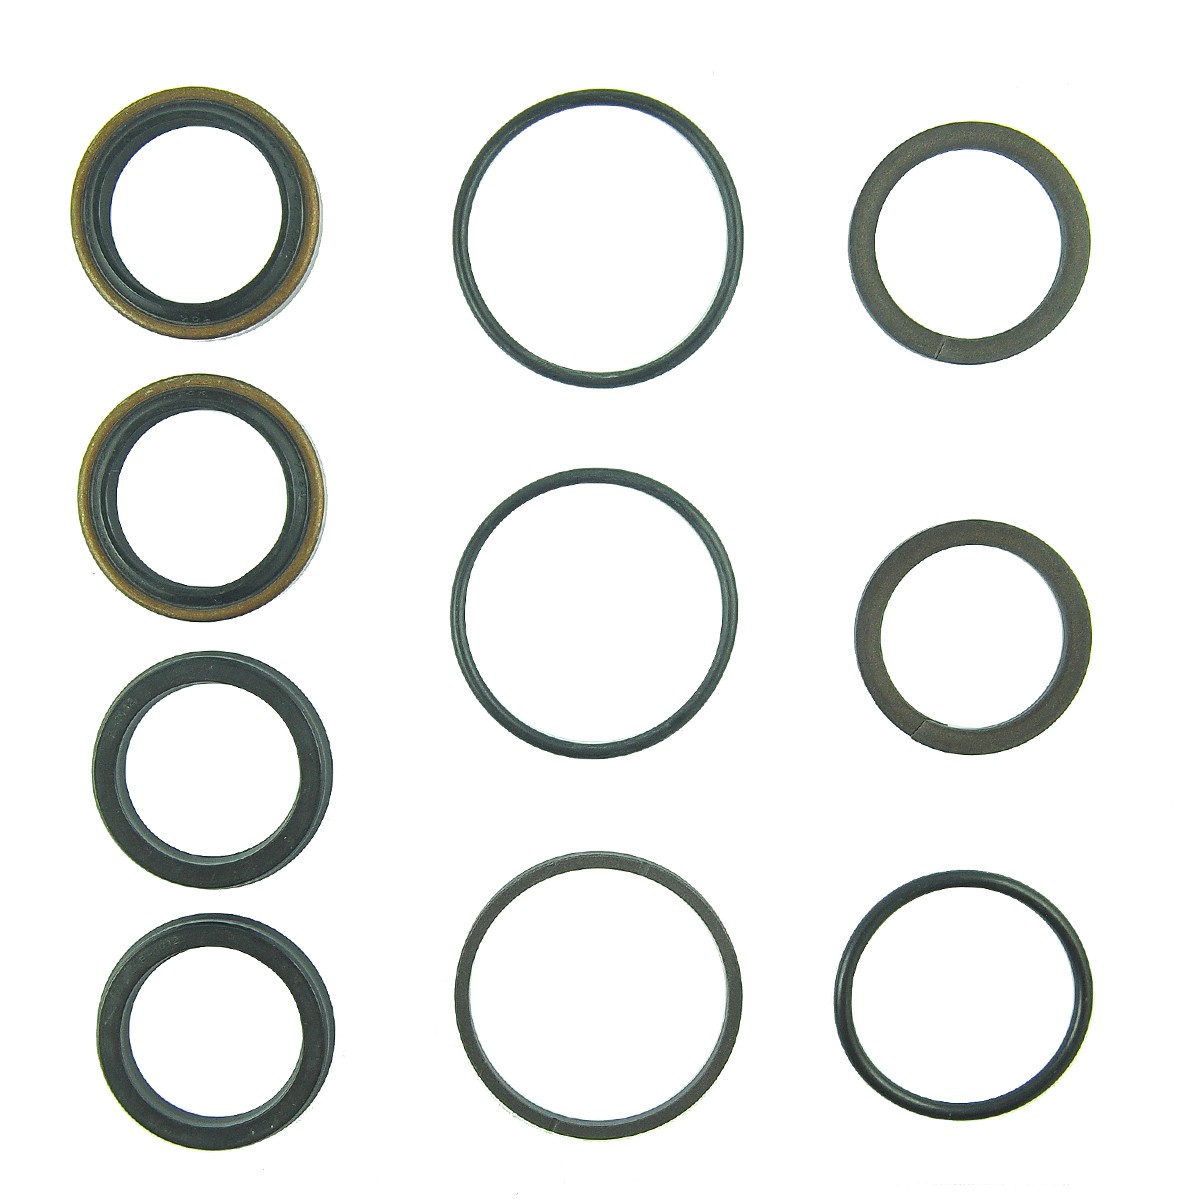 Joints de cylindre de direction assistée / Kubota L4508 / TD060-37950 / 6-07-103-04